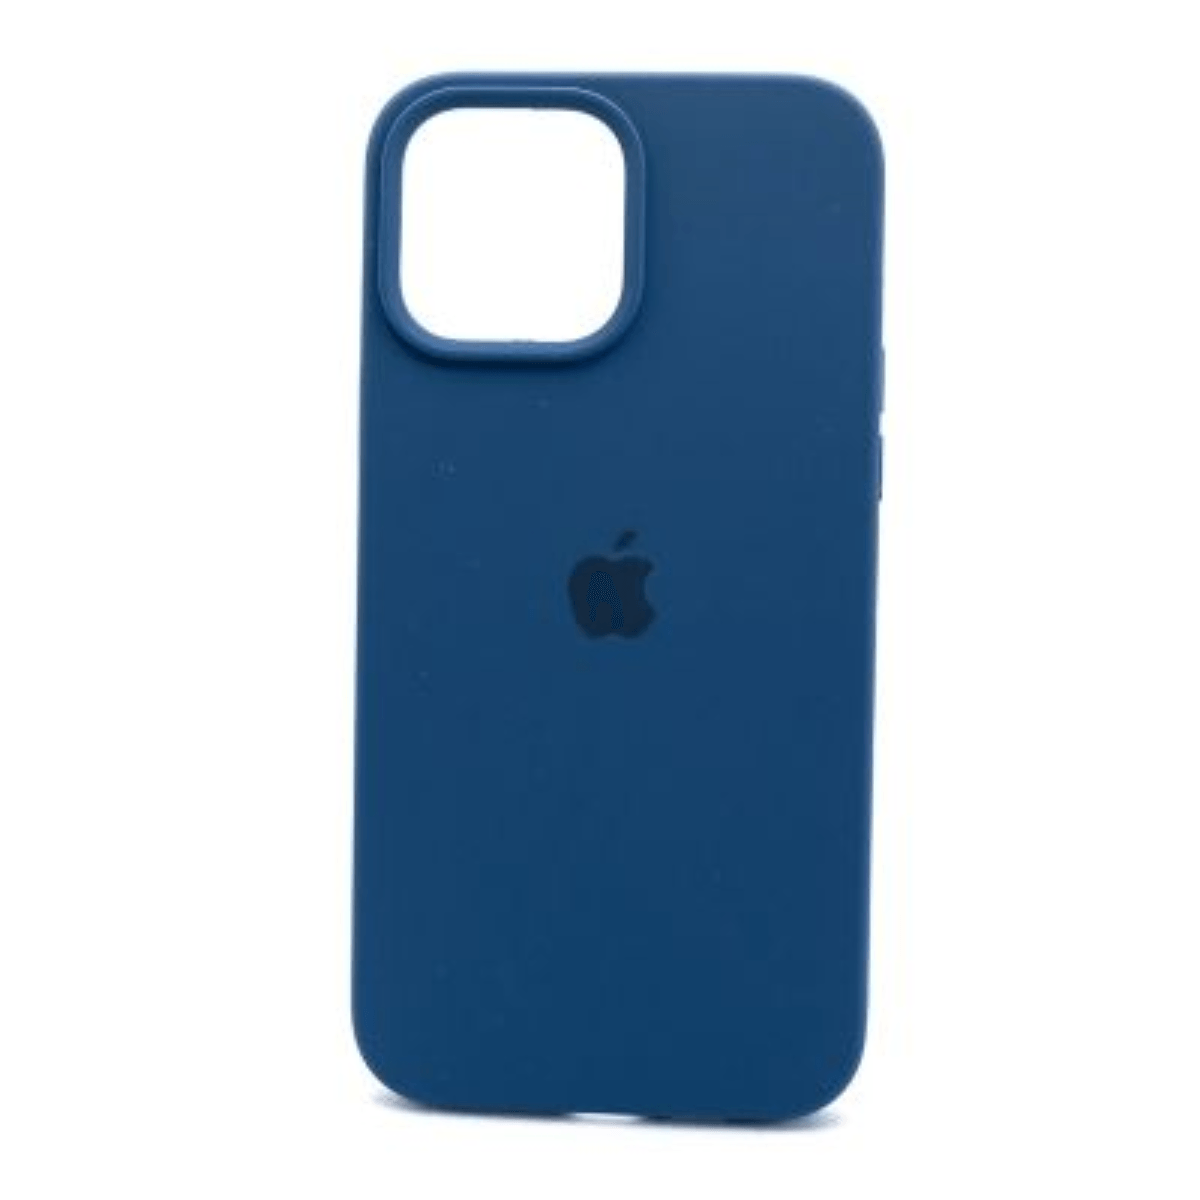 Case Silicona Iphone 11 Pro - Azul Cobalto